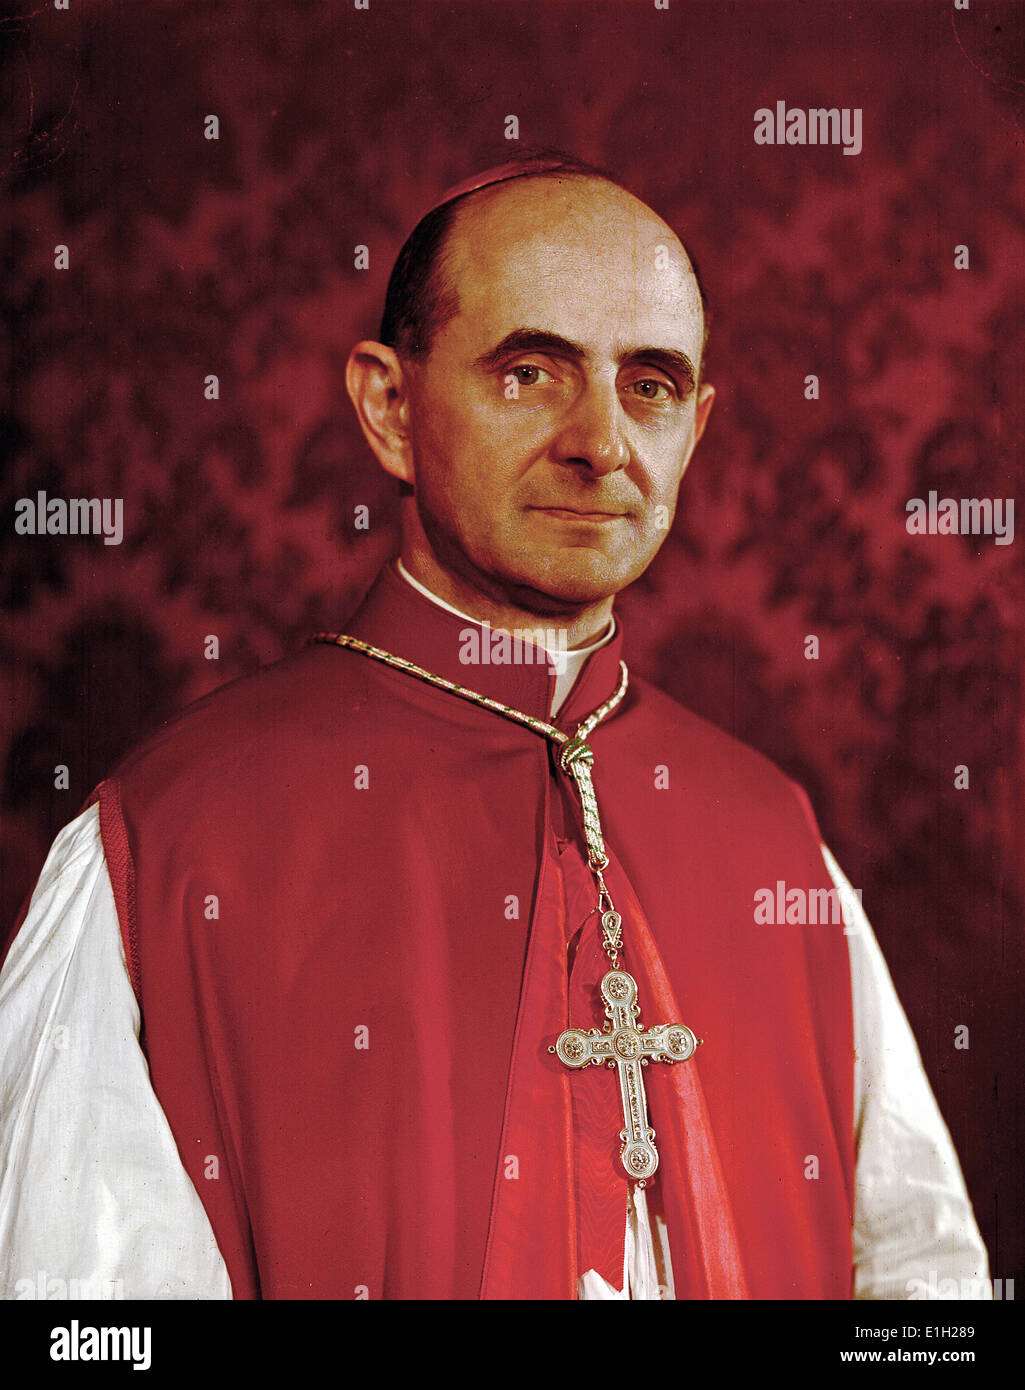 Il Cardinal Montini, future Pope Paolo VI Stock Photo - Alamy